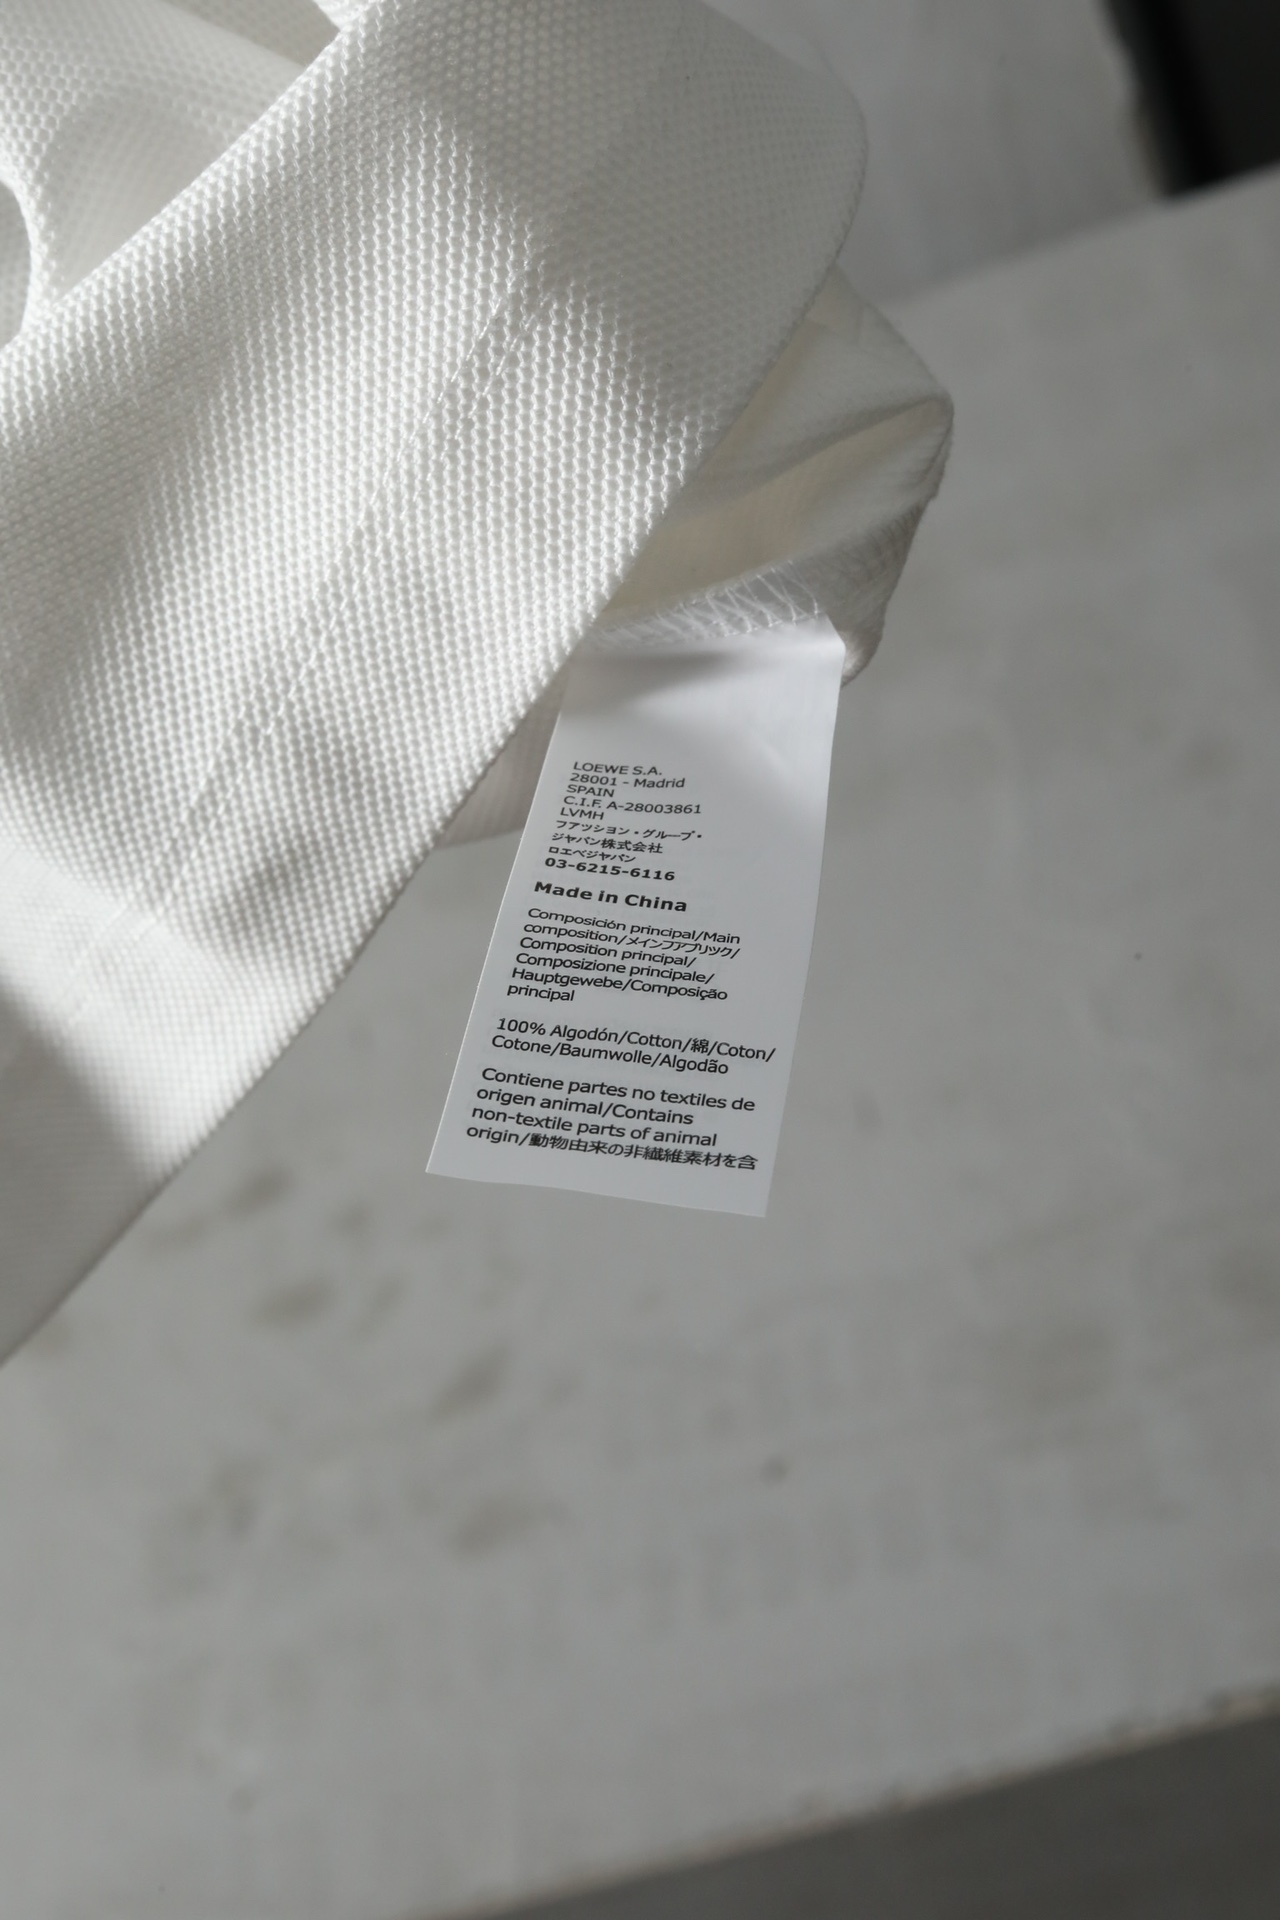 春夏新品LO*E*WE圆领T恤经典的黑白双色微宽松版型贴近lw时尚简约的风格和设计语言来自LW日本线的独